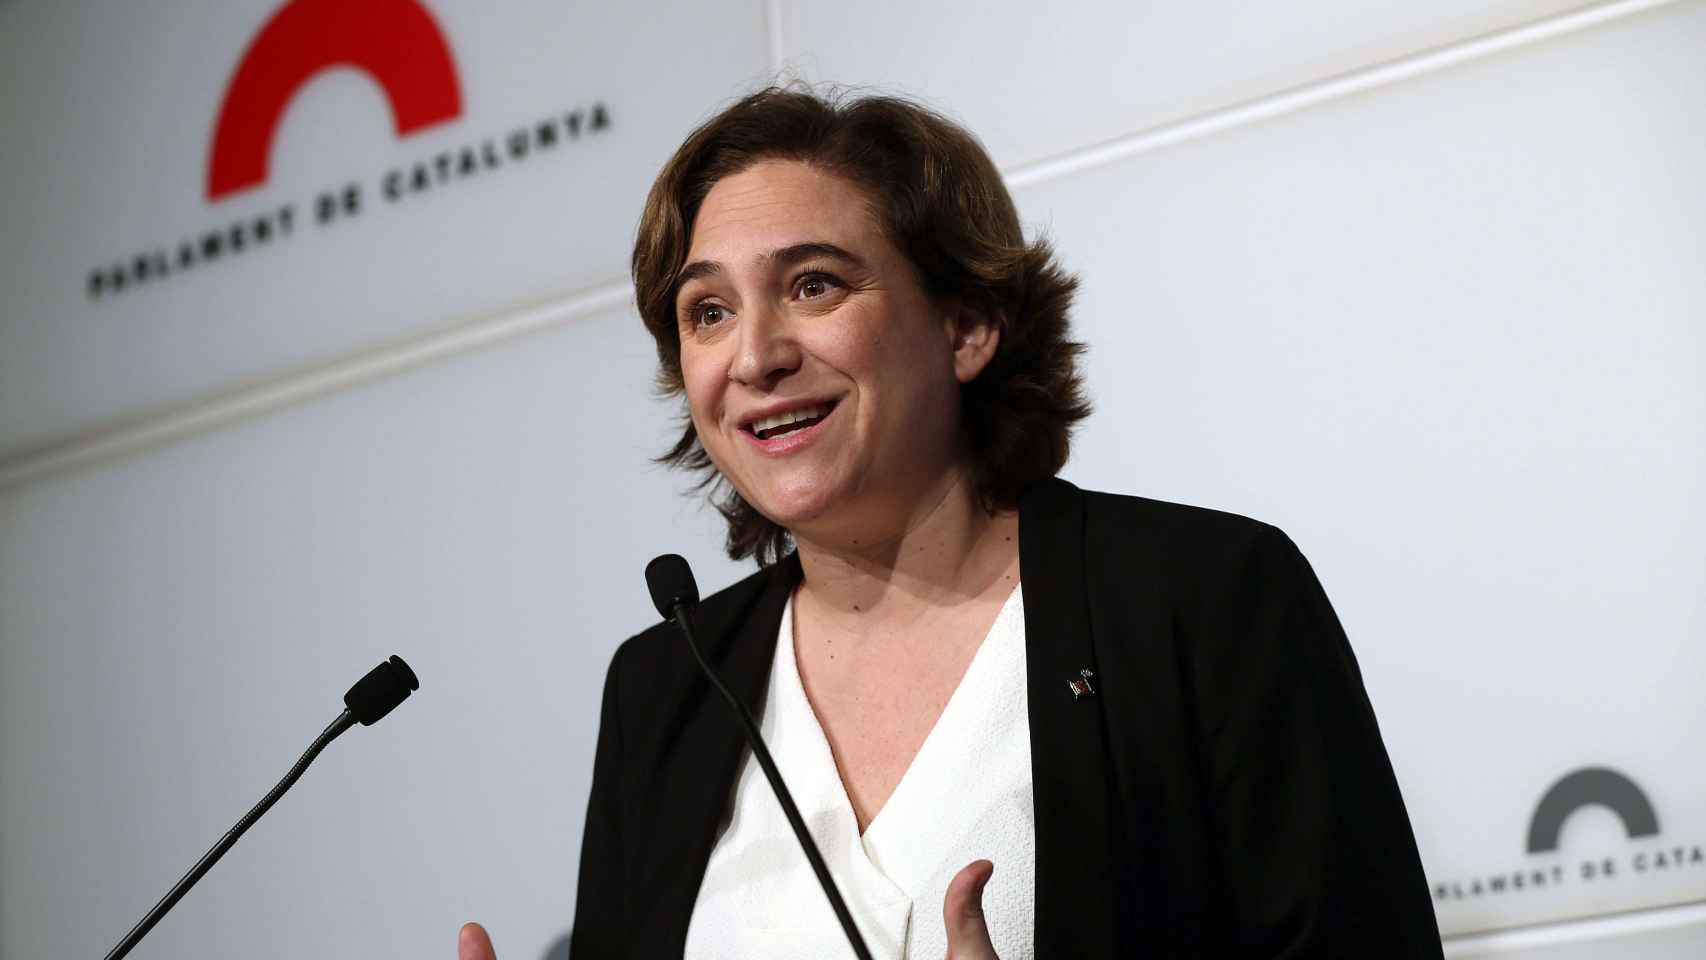 La alcaldesa de Barcelona, Ada Colau, en una imagen de archivo / EFE